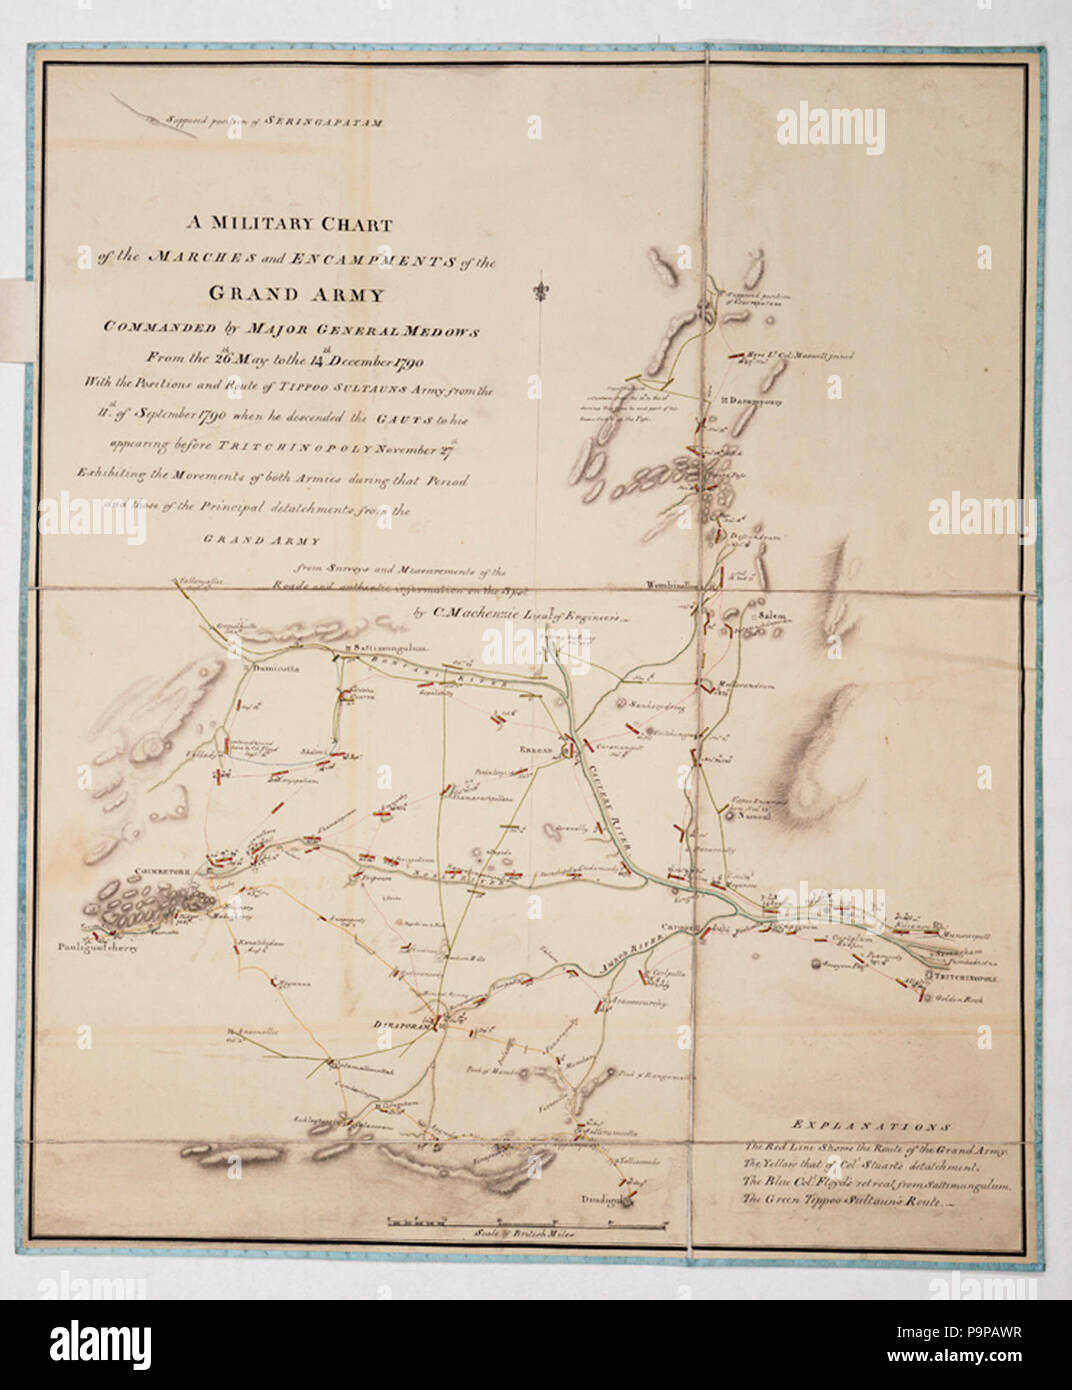 Ein militärischer Plan der Märsche und zeltlagern der Grand Armee von Generalmajor Medows vom 26. Mai geboten, dem 14. Dezember 1790. Stockfoto